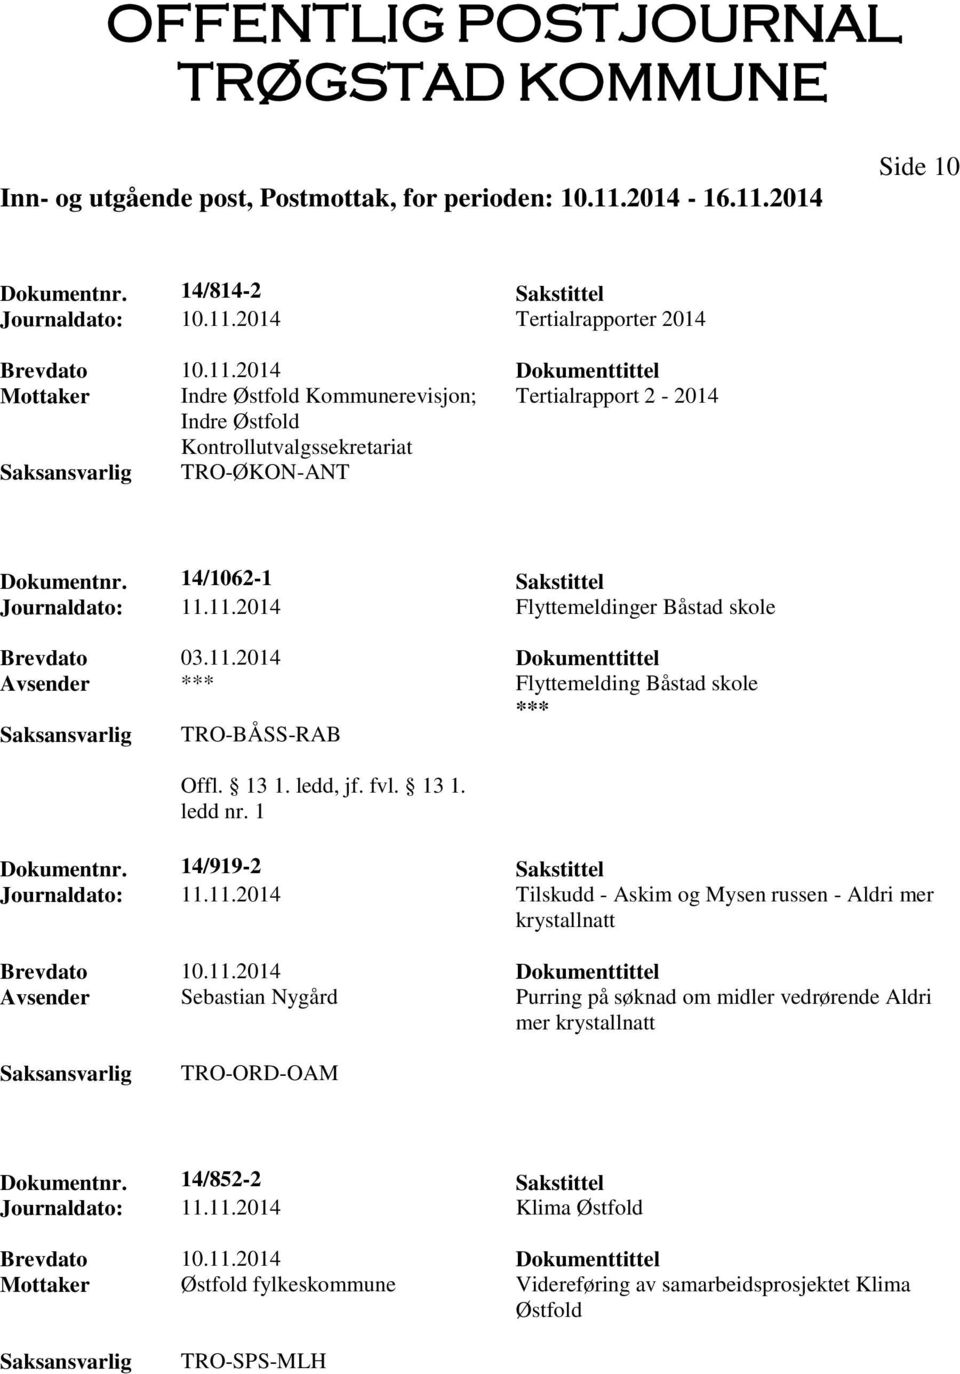 11.2014 Flyttemeldinger Båstad skole Brevdato 03.11.2014 Dokumenttittel Avsender *** Flyttemelding Båstad skole *** TRO-BÅSS-RAB Offl. 13 1. ledd, jf. fvl. 13 1. ledd nr. 1 Dokumentnr.